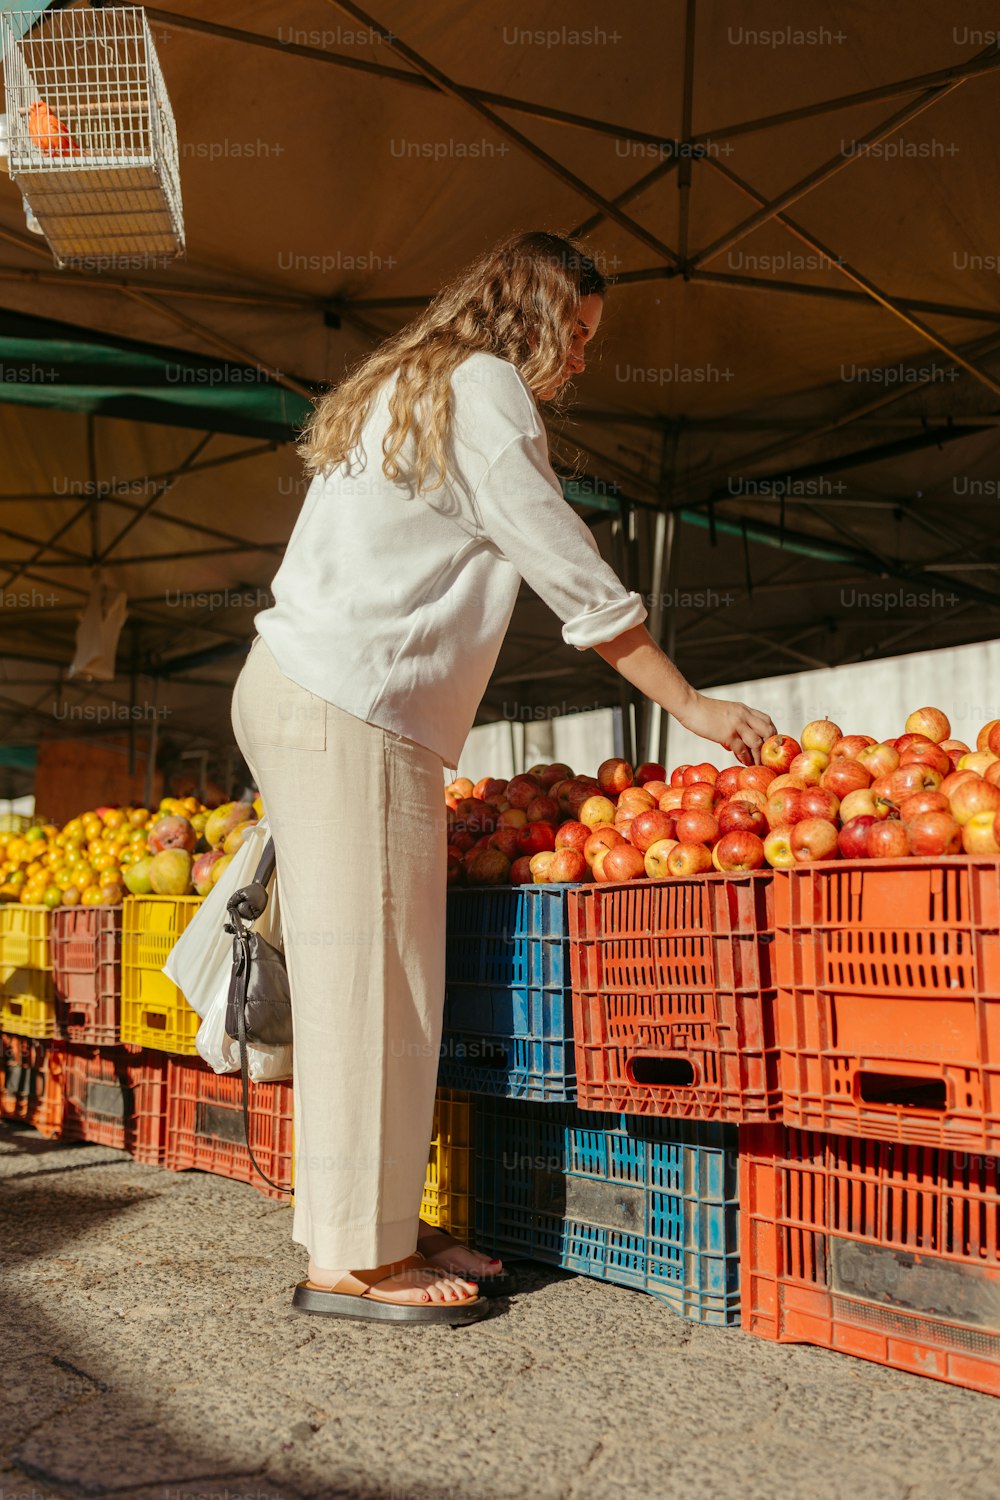 Una mujer está recogiendo naranjas de un puesto de frutas